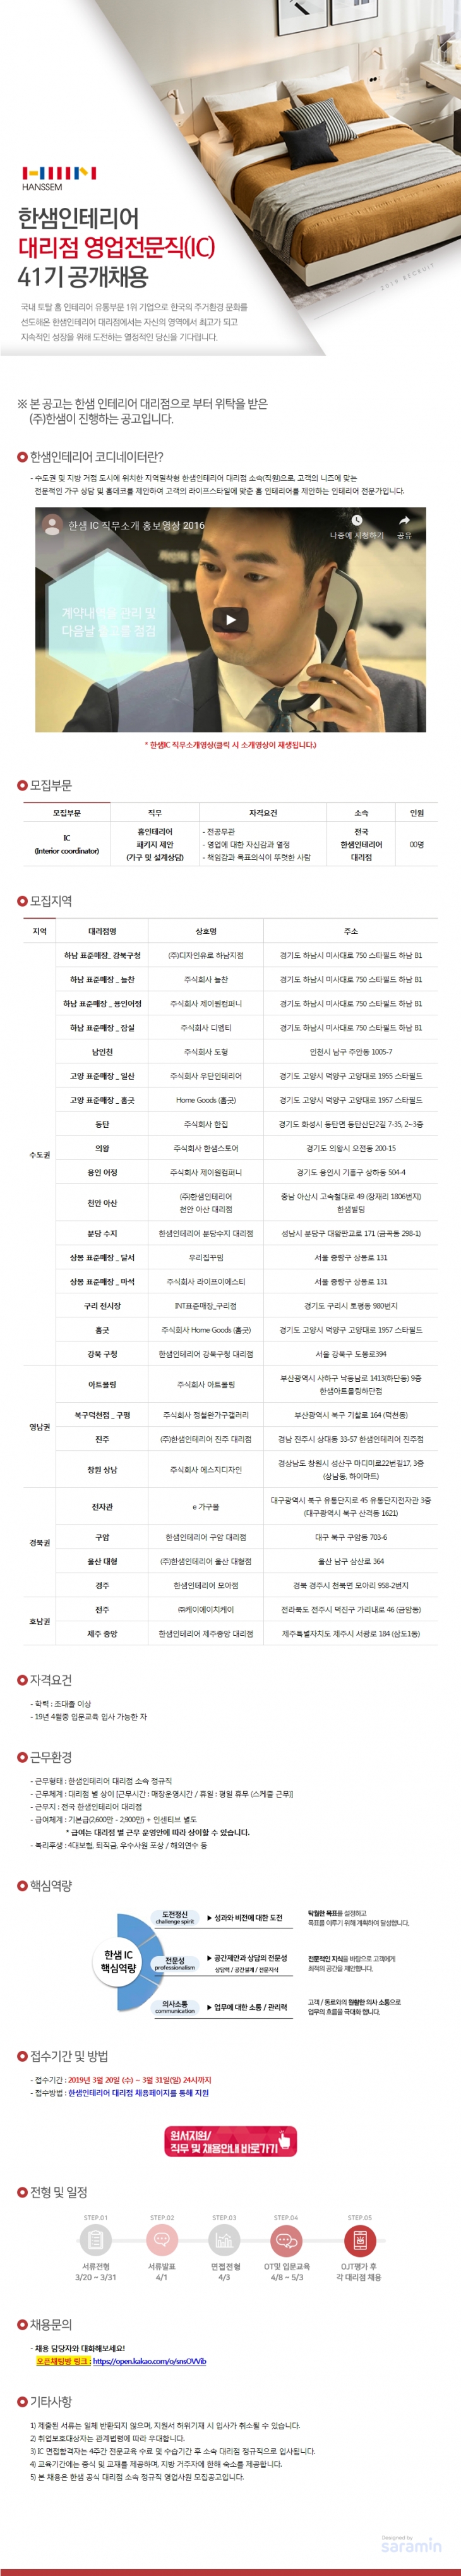 2019 한샘 인테리어 대리점 영업전문직 IC 41기 공개채용 ~3/31